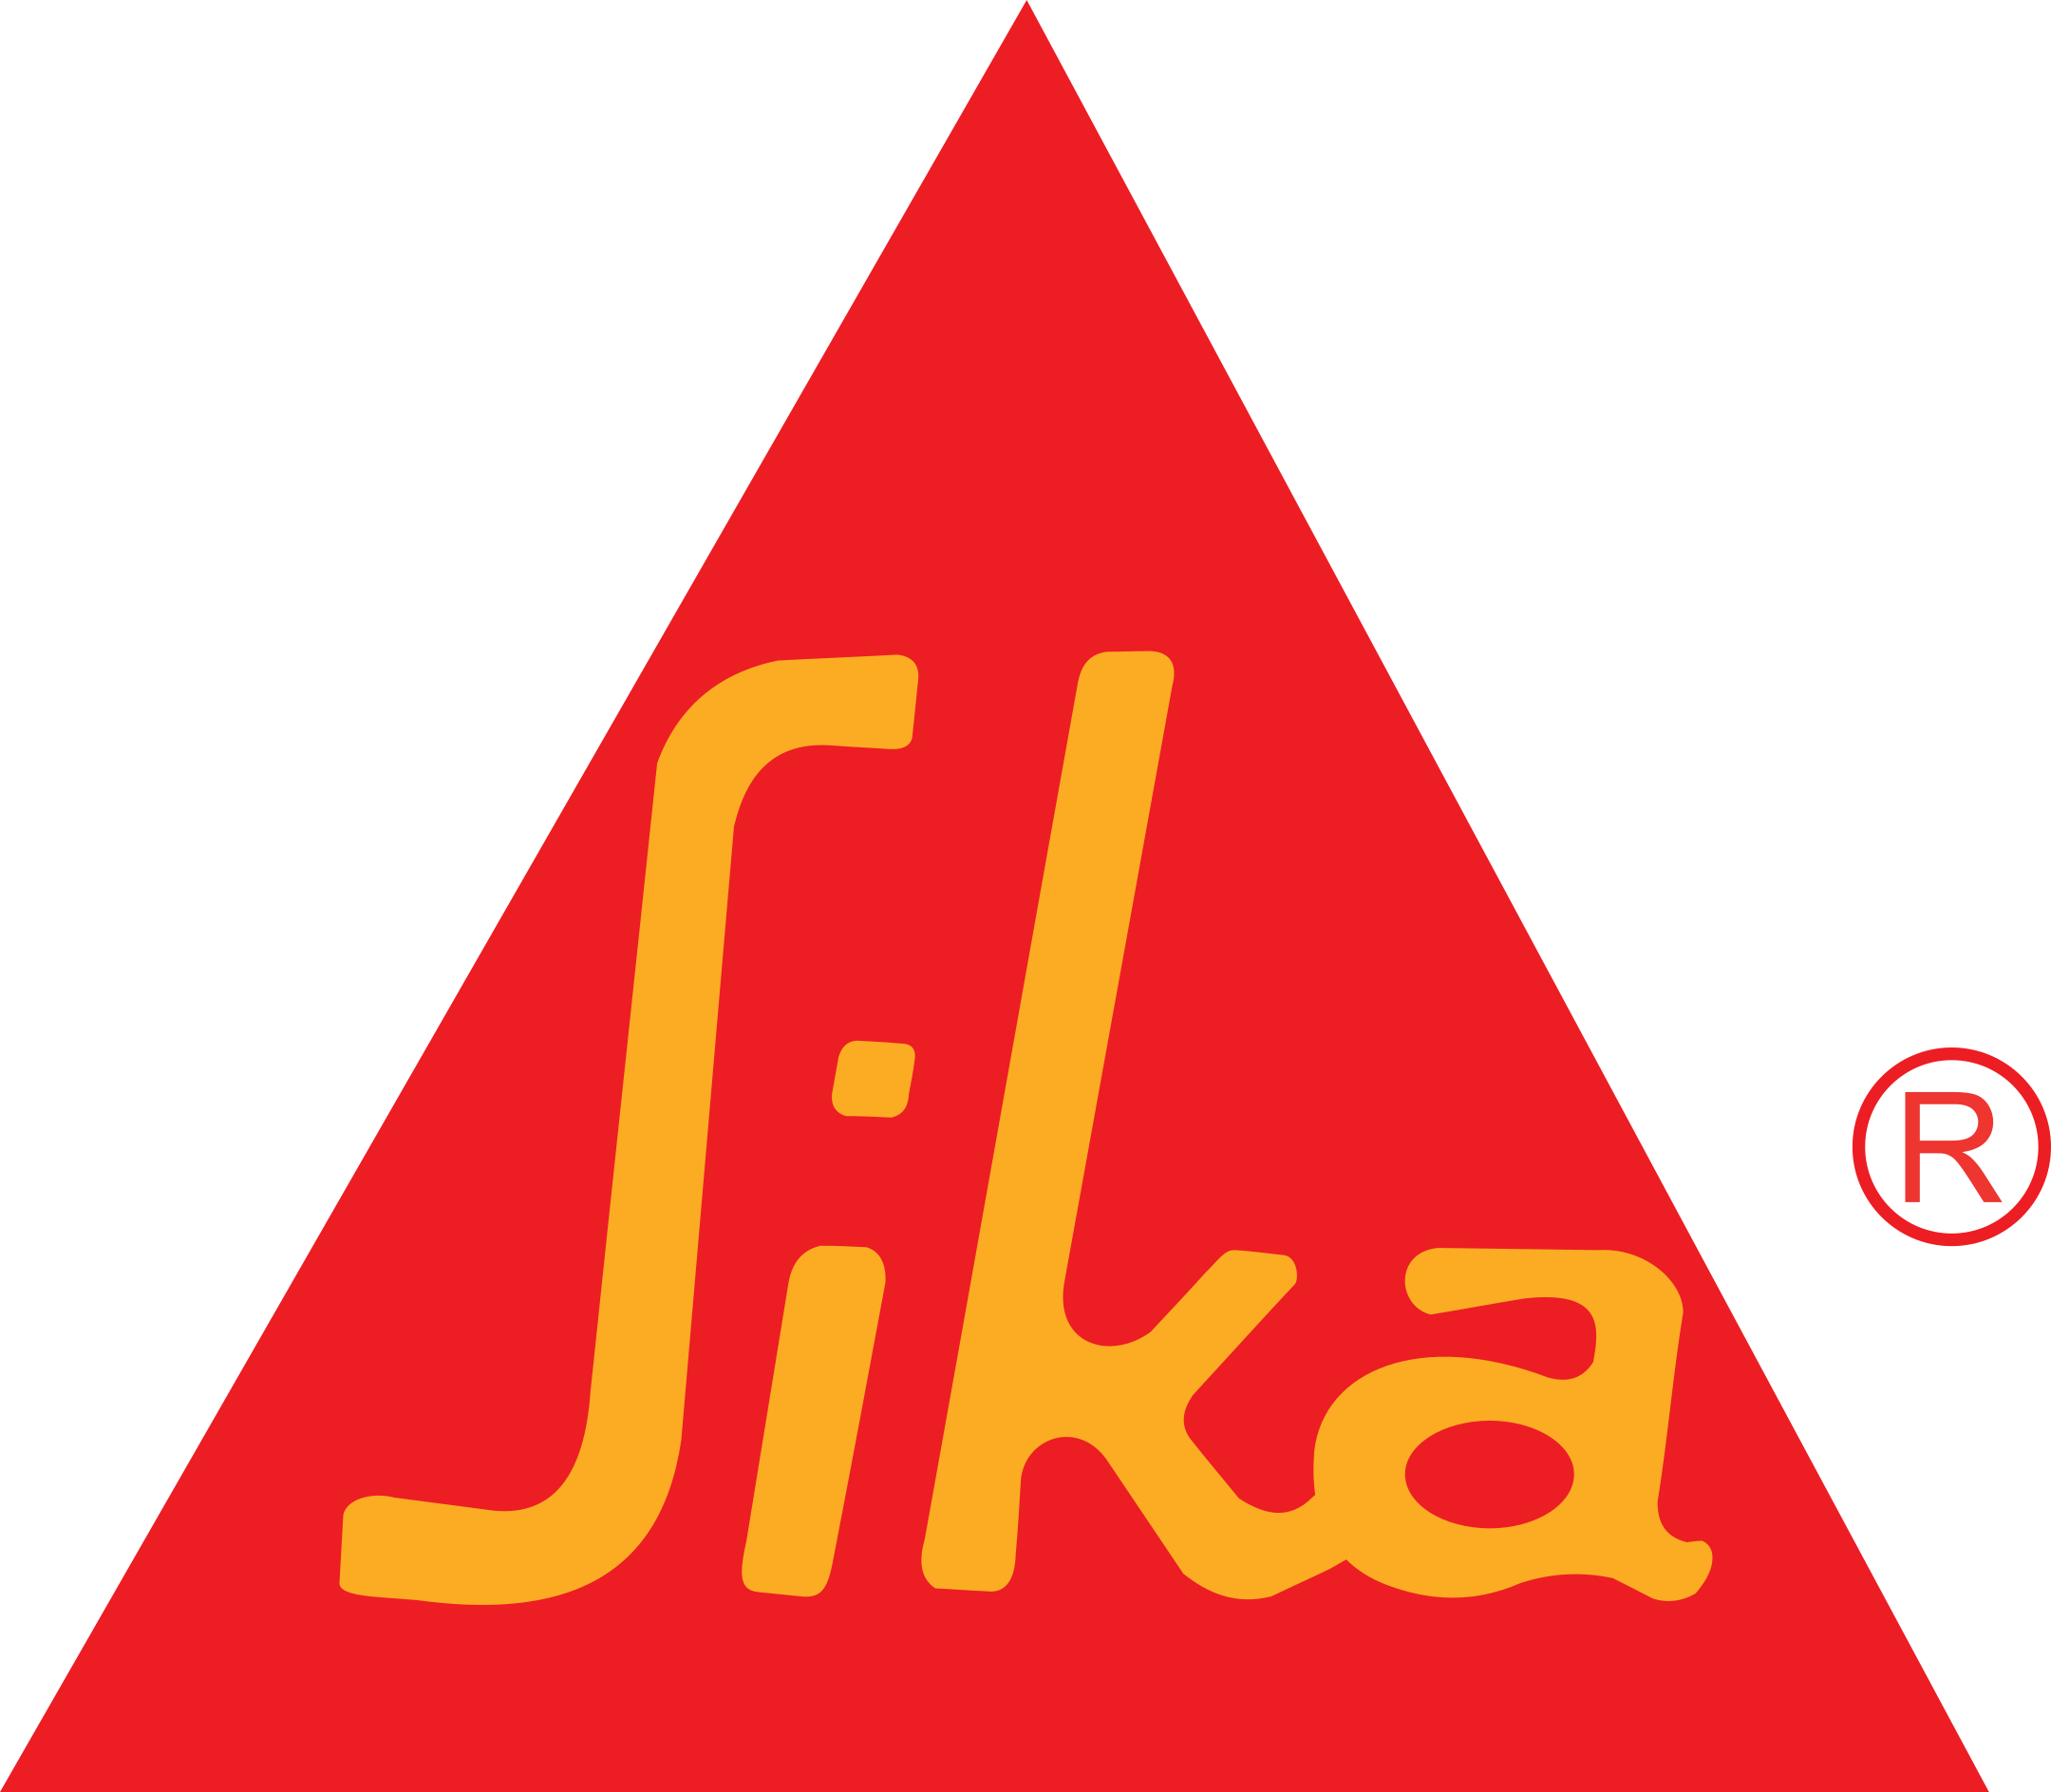 sika logo 1 - Sika Logo